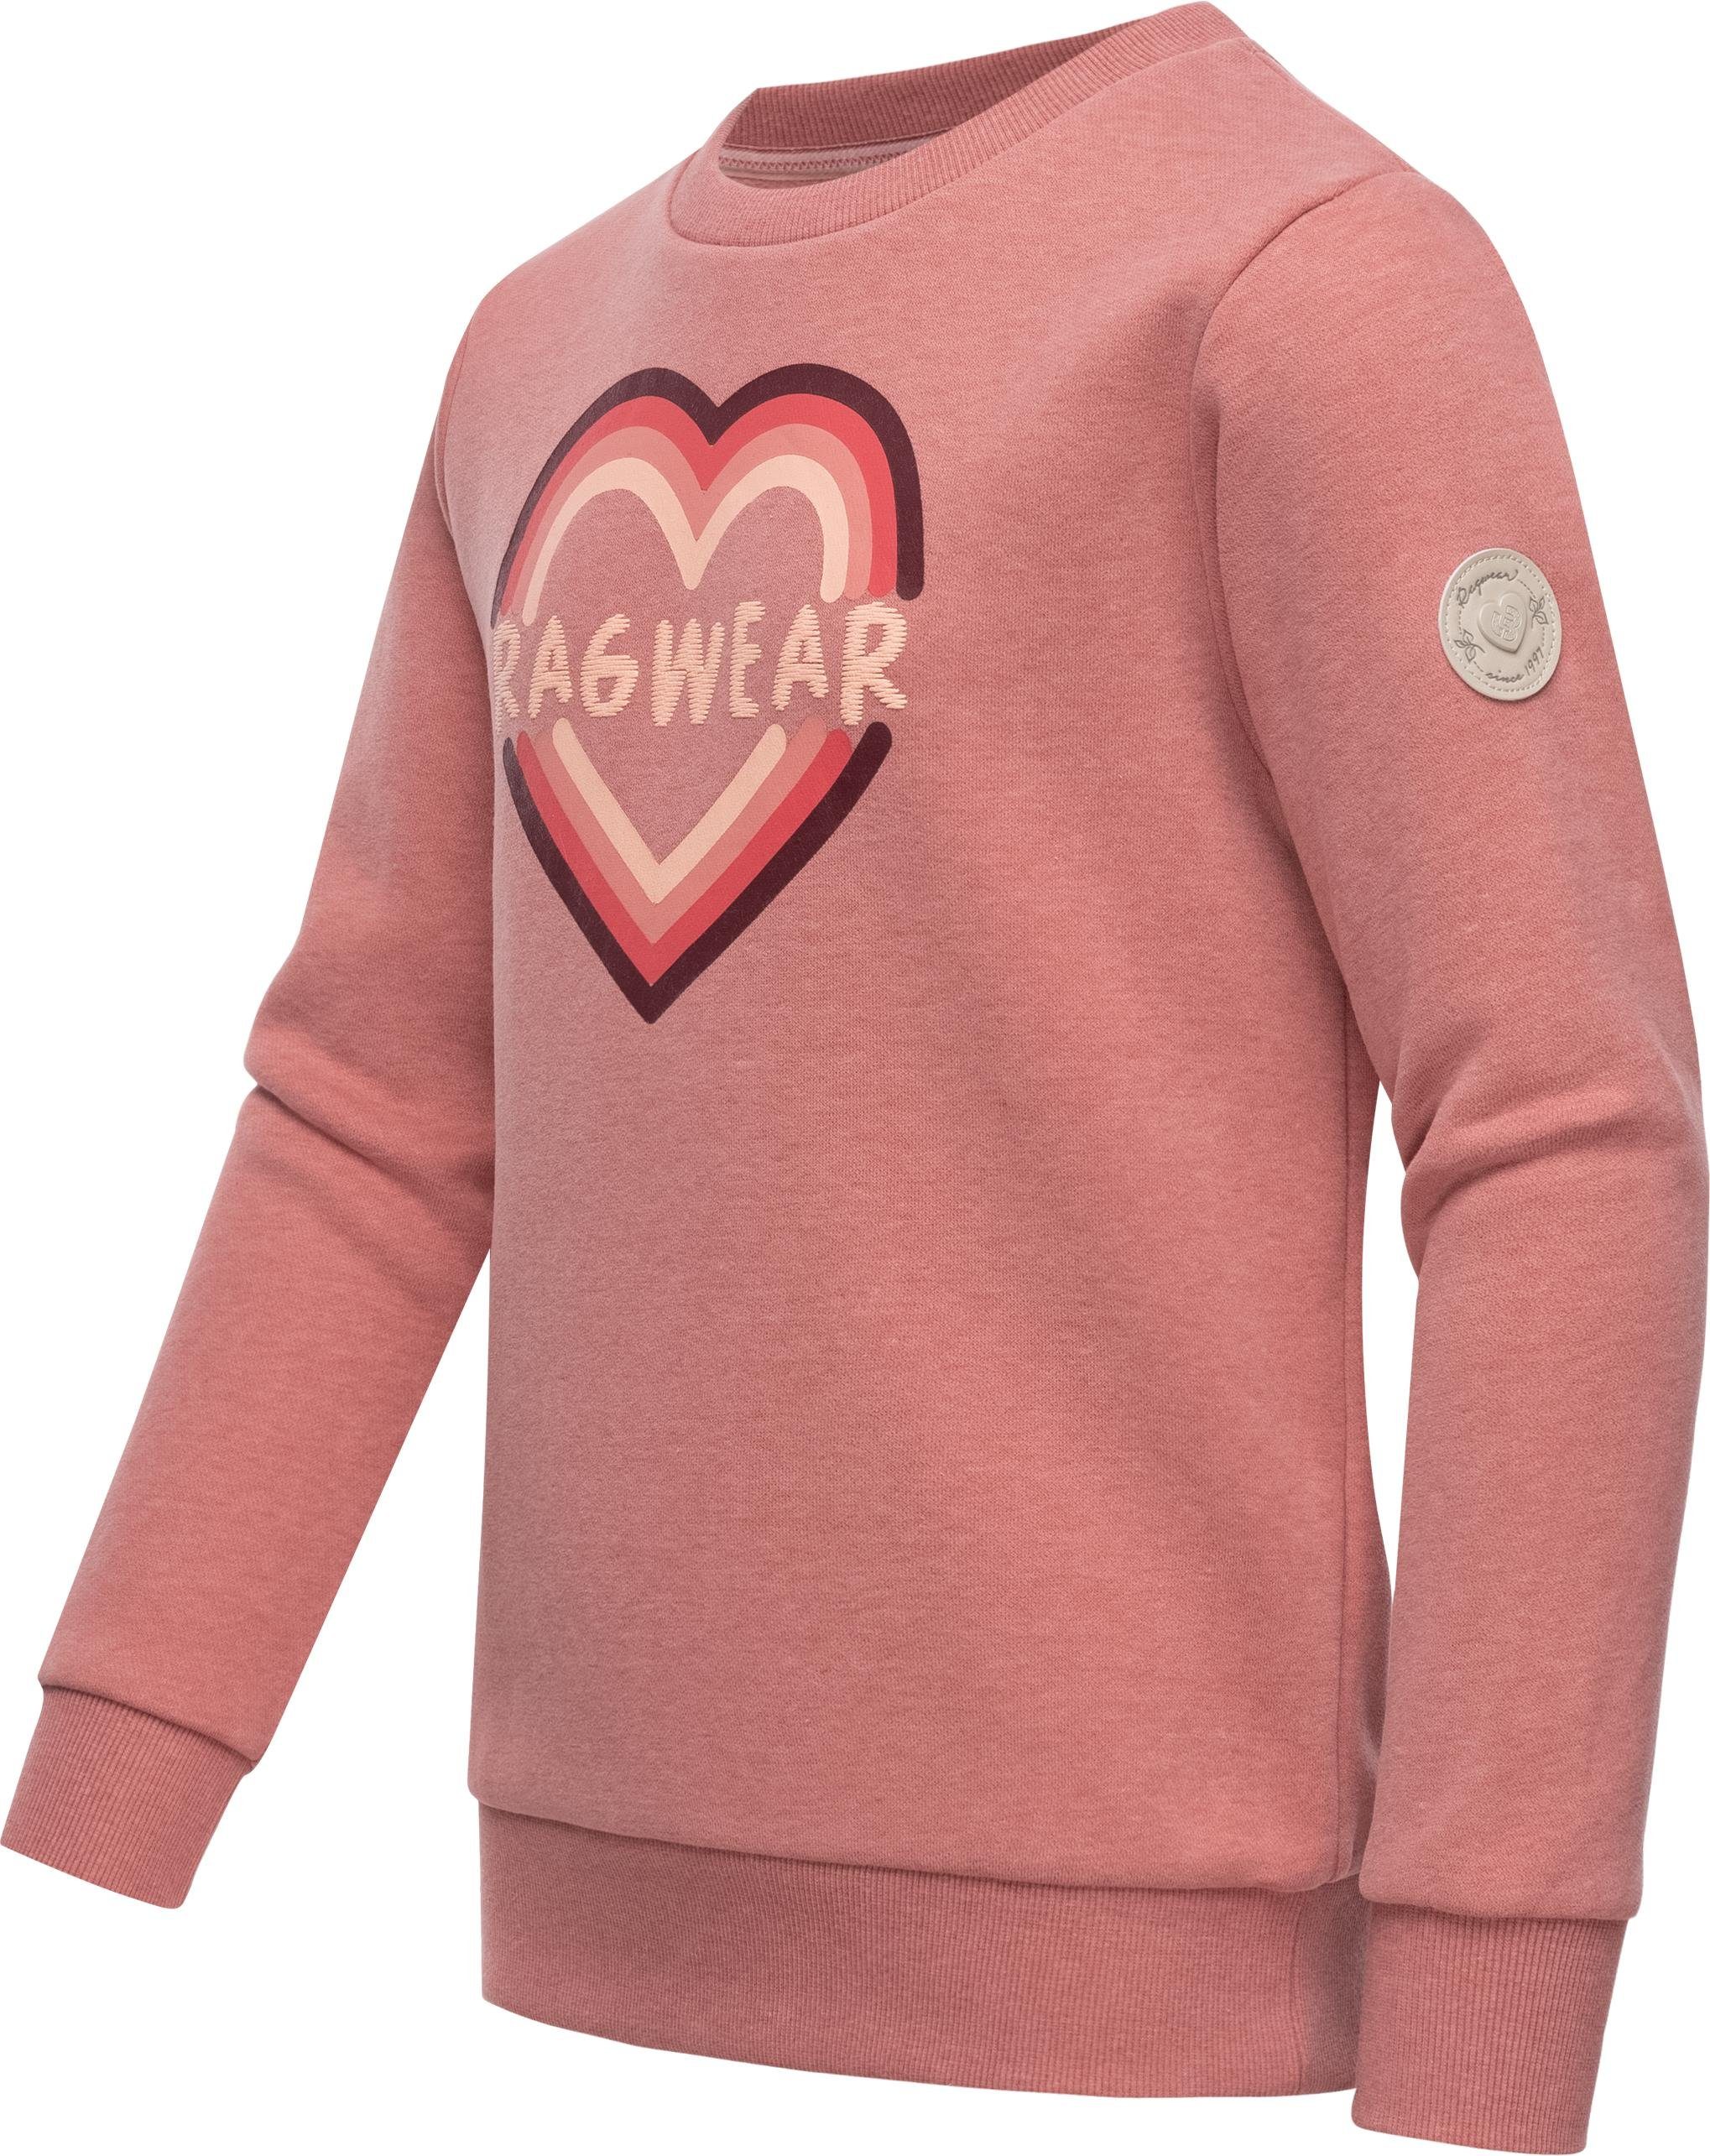 Ragwear Sweater Evka Print stylisches Mädchen Sweatshirt mit coolem Logo  Print, Sehr angenehm zu tragen, schmiegt sich perfekt an